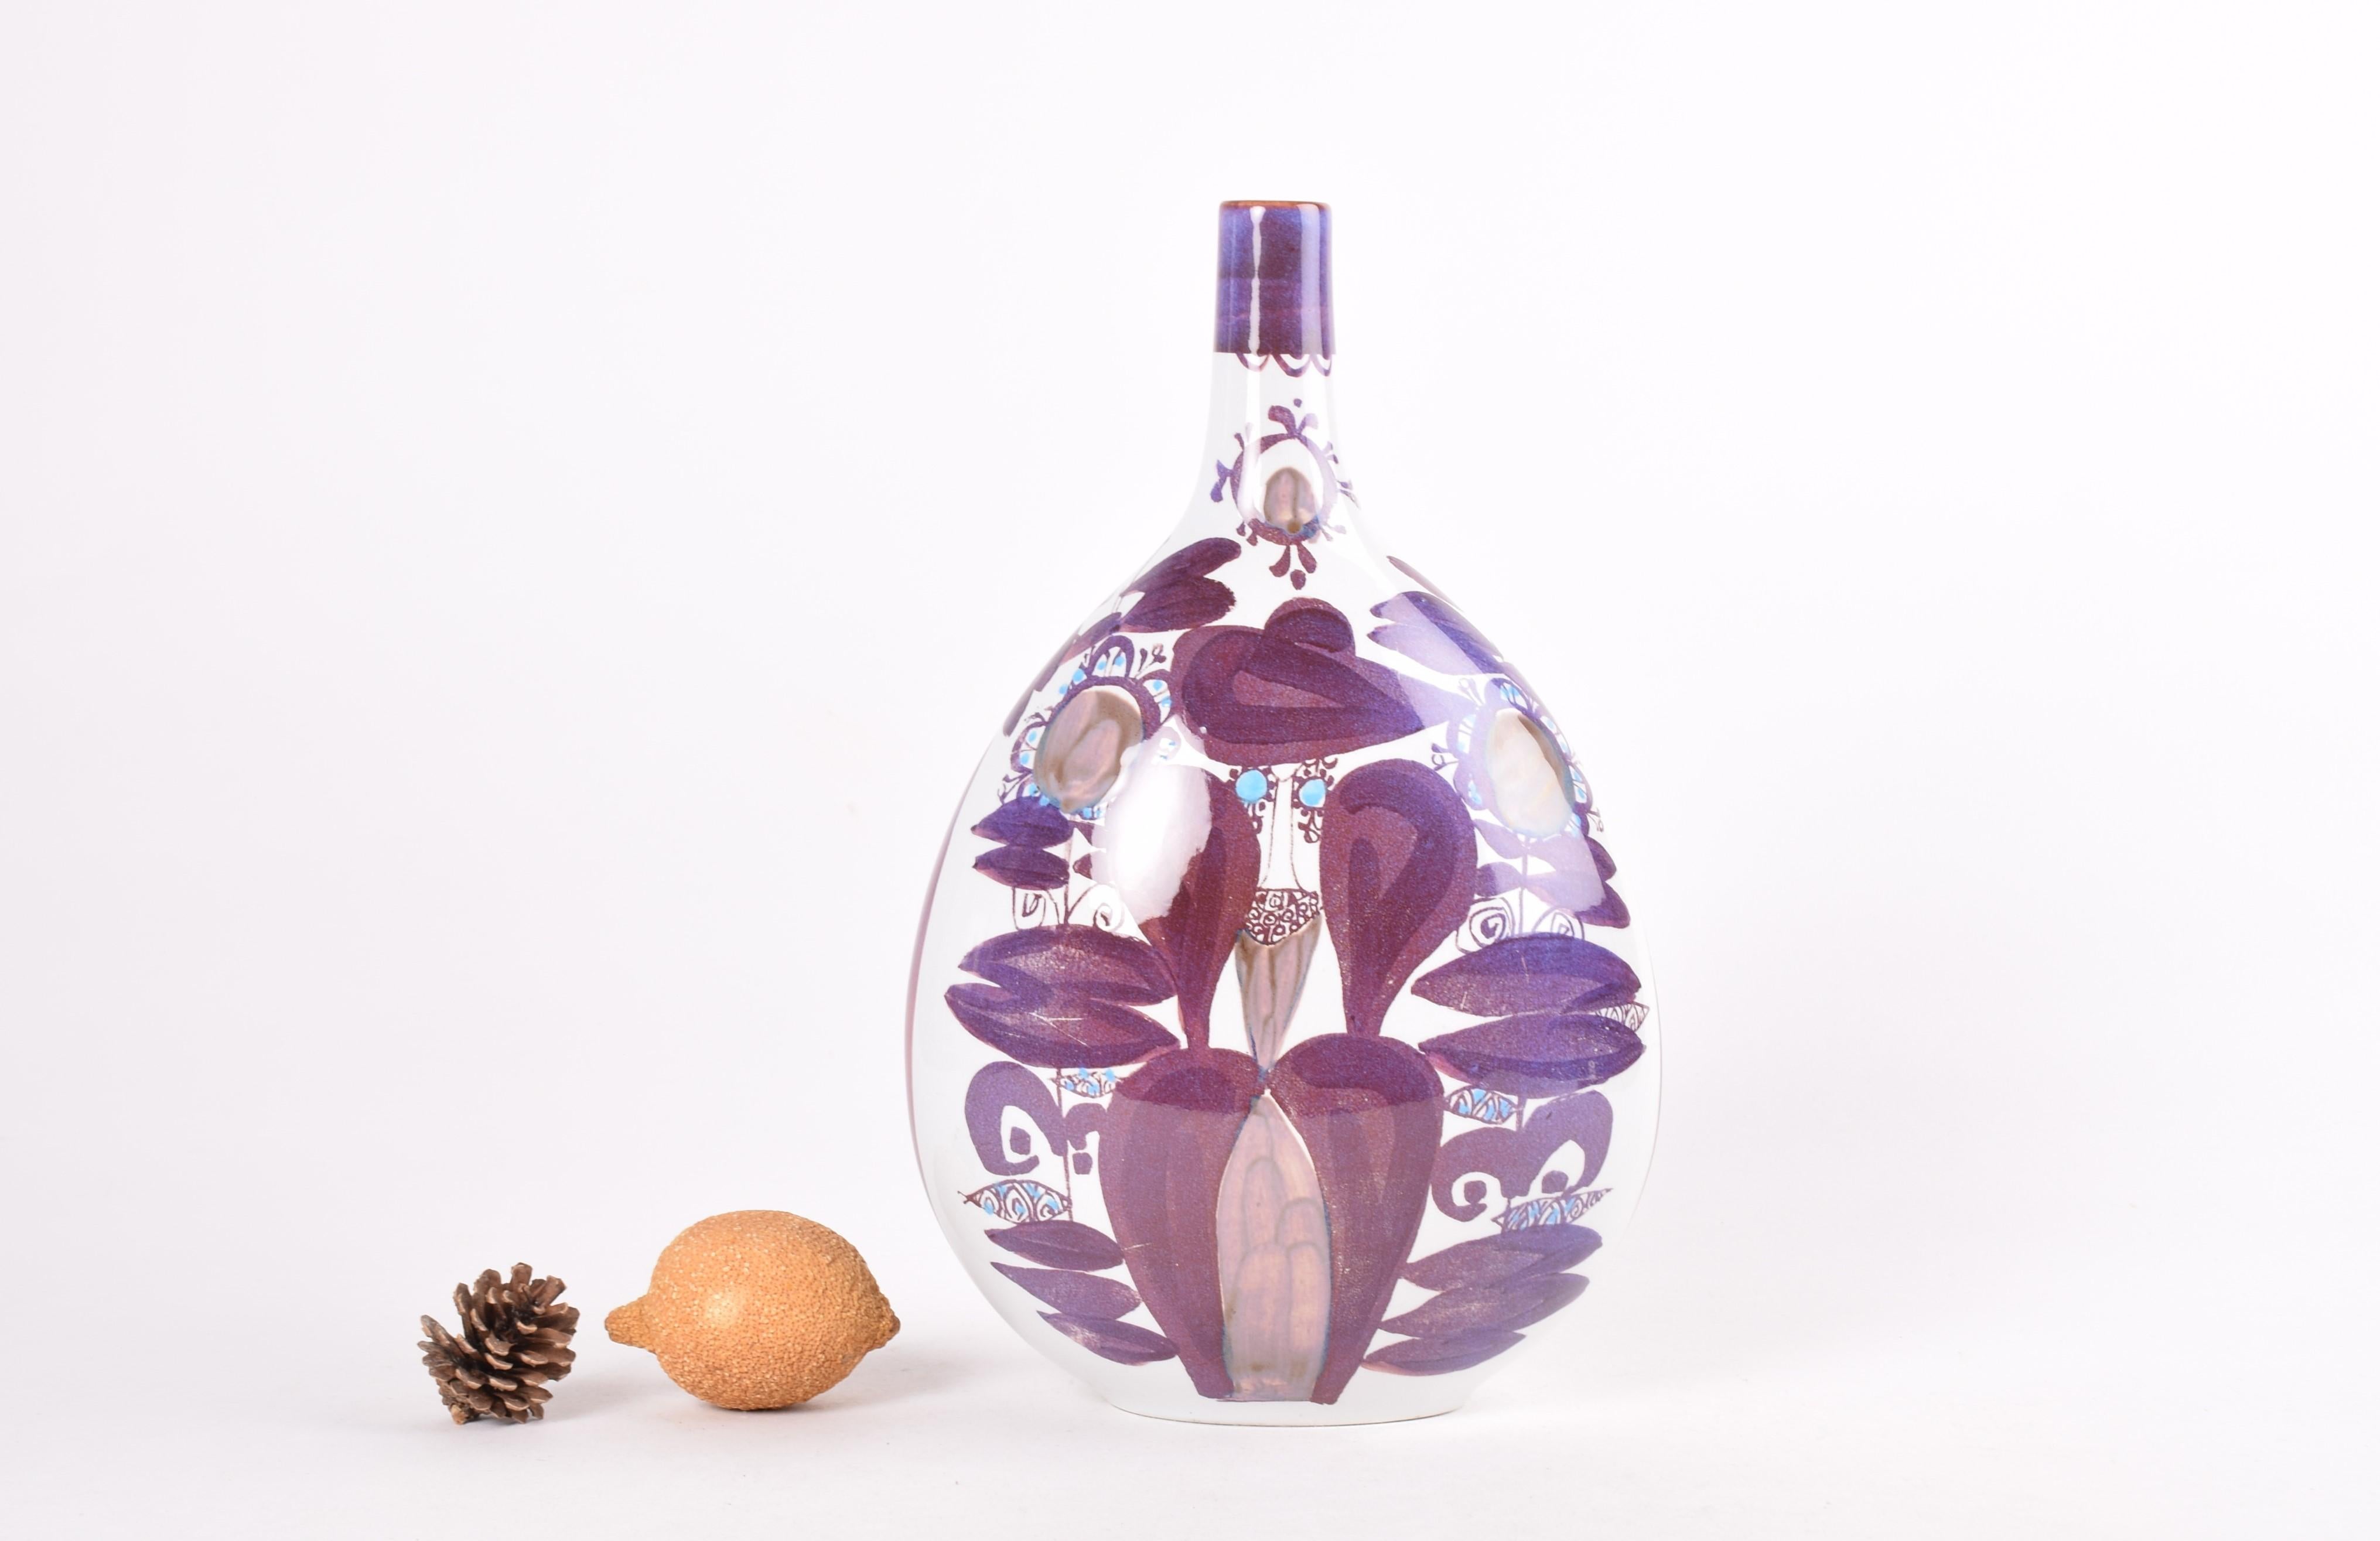 Hohe Vase aus der Aluminia (späterer Markenname Royal Copenhagen) Tenera-Serie. Das handgemalte abstrakte Blumendekor wurde in den 1960er Jahren von Kari Christensen entworfen. Er hat das gleiche Dekor auf Vorder- und Rückseite.

Diese Vase stammt